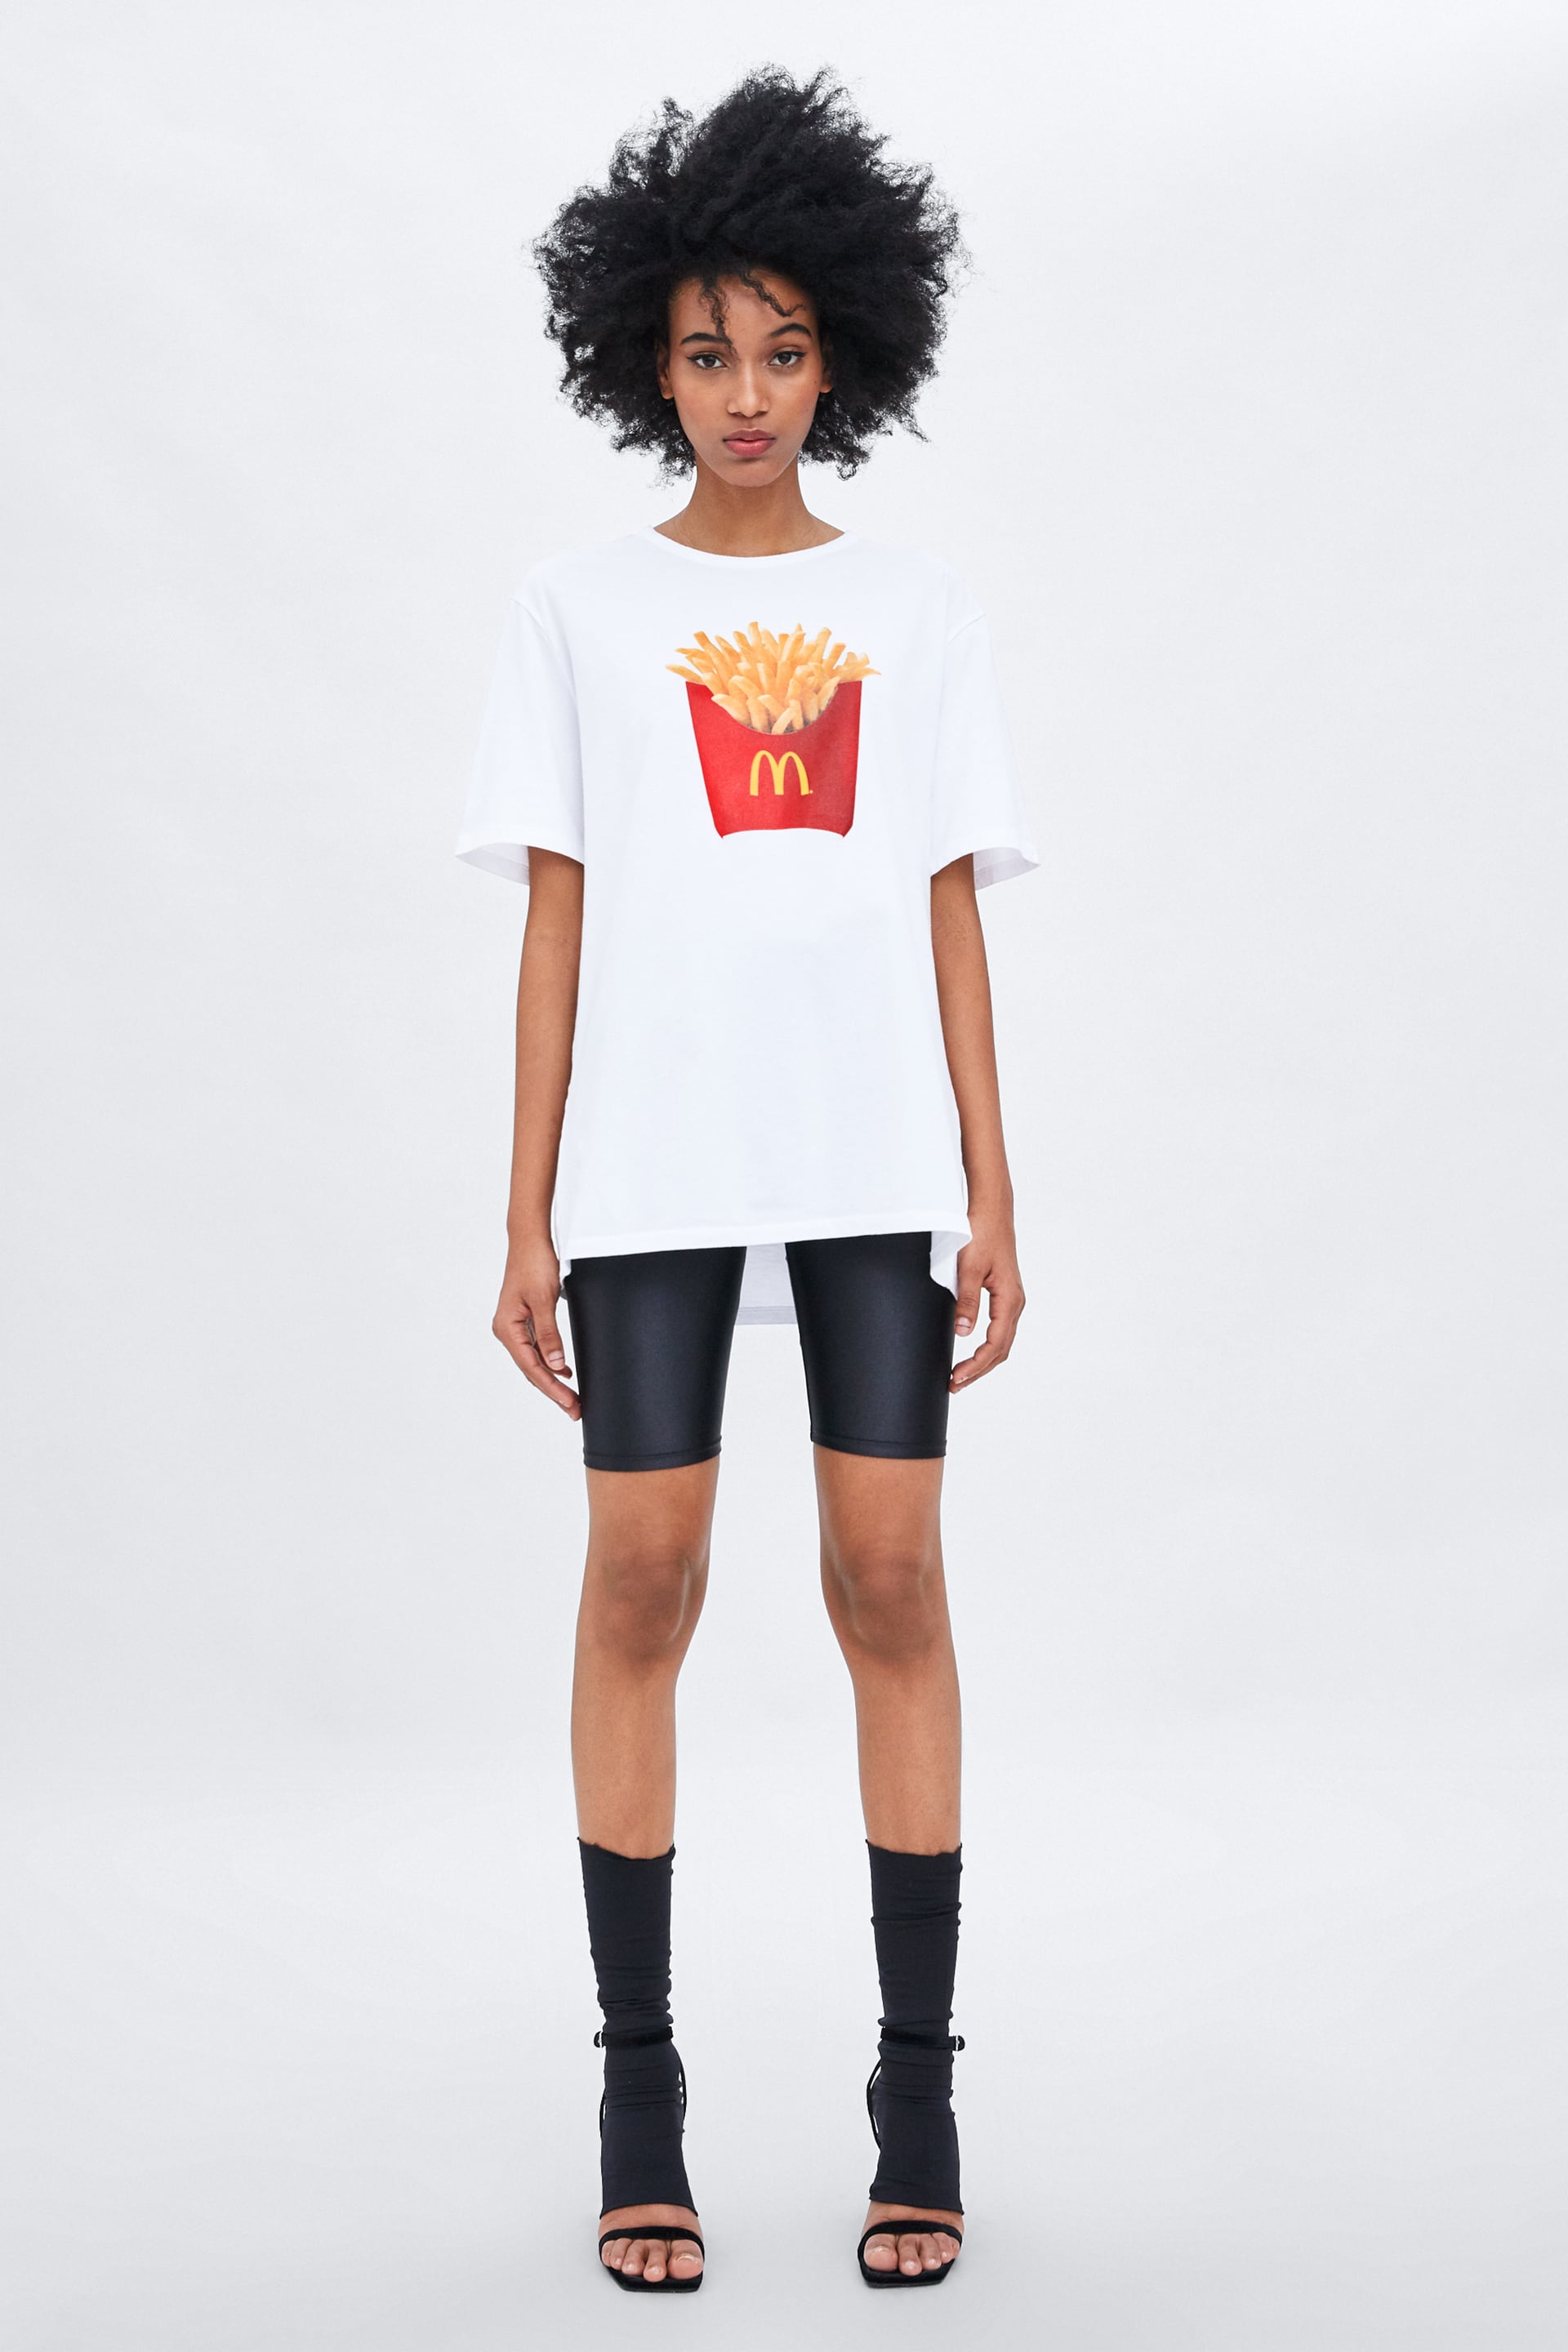 Zara McDonald's T-shirt 2019